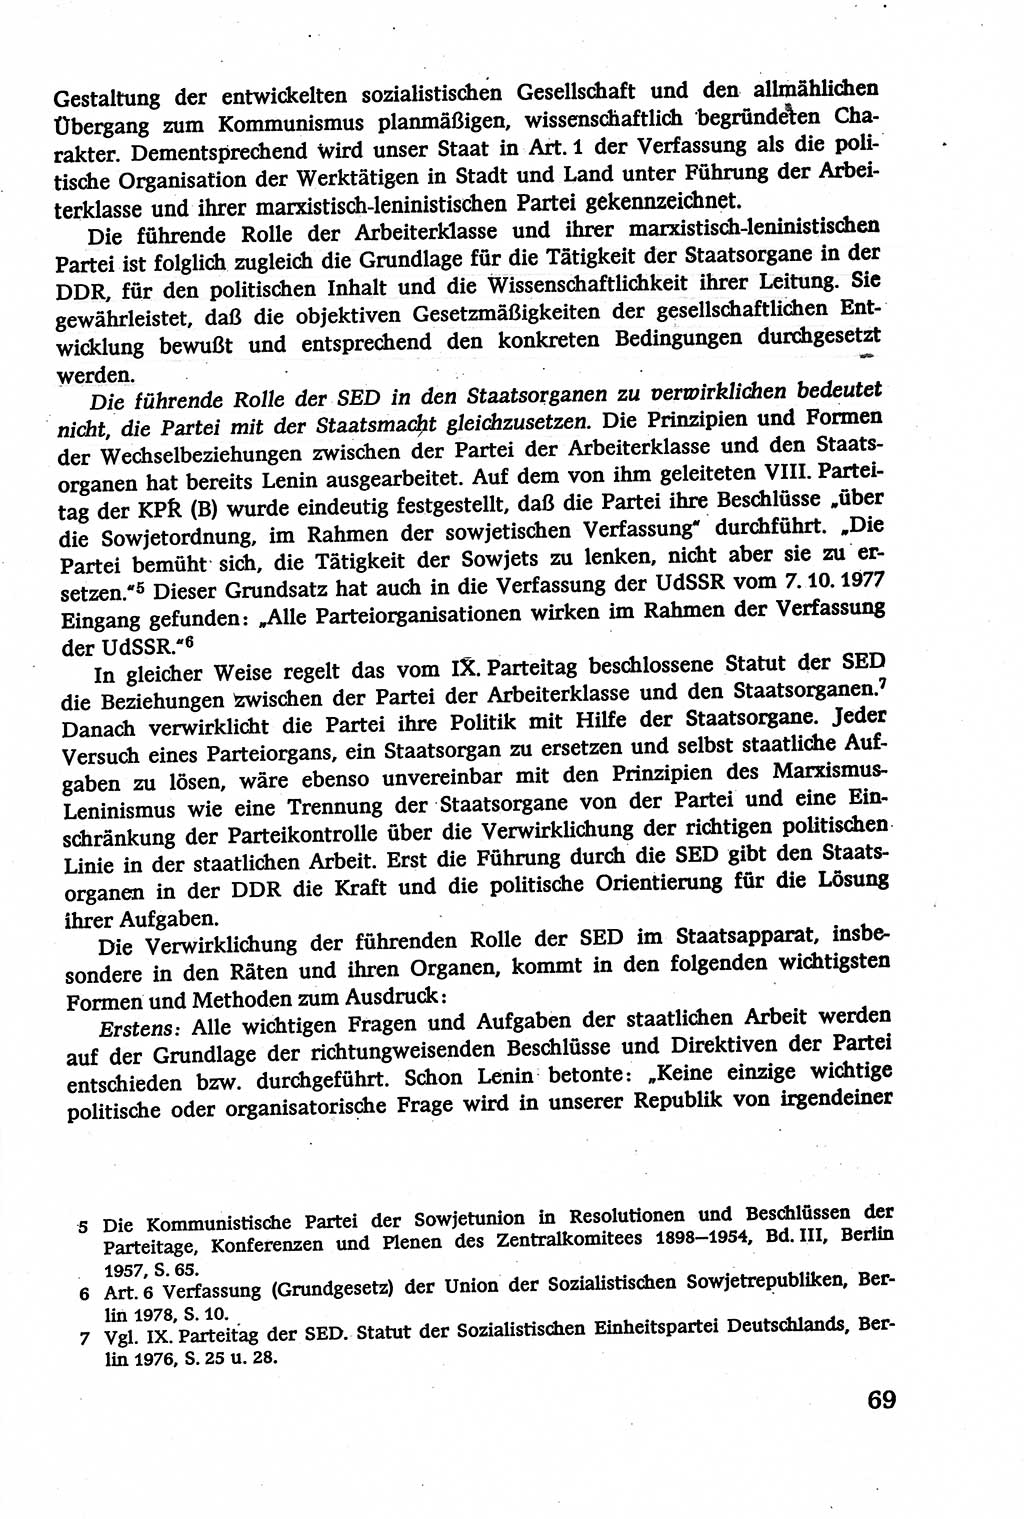 Verwaltungsrecht [Deutsche Demokratische Republik (DDR)], Lehrbuch 1979, Seite 69 (Verw.-R. DDR Lb. 1979, S. 69)